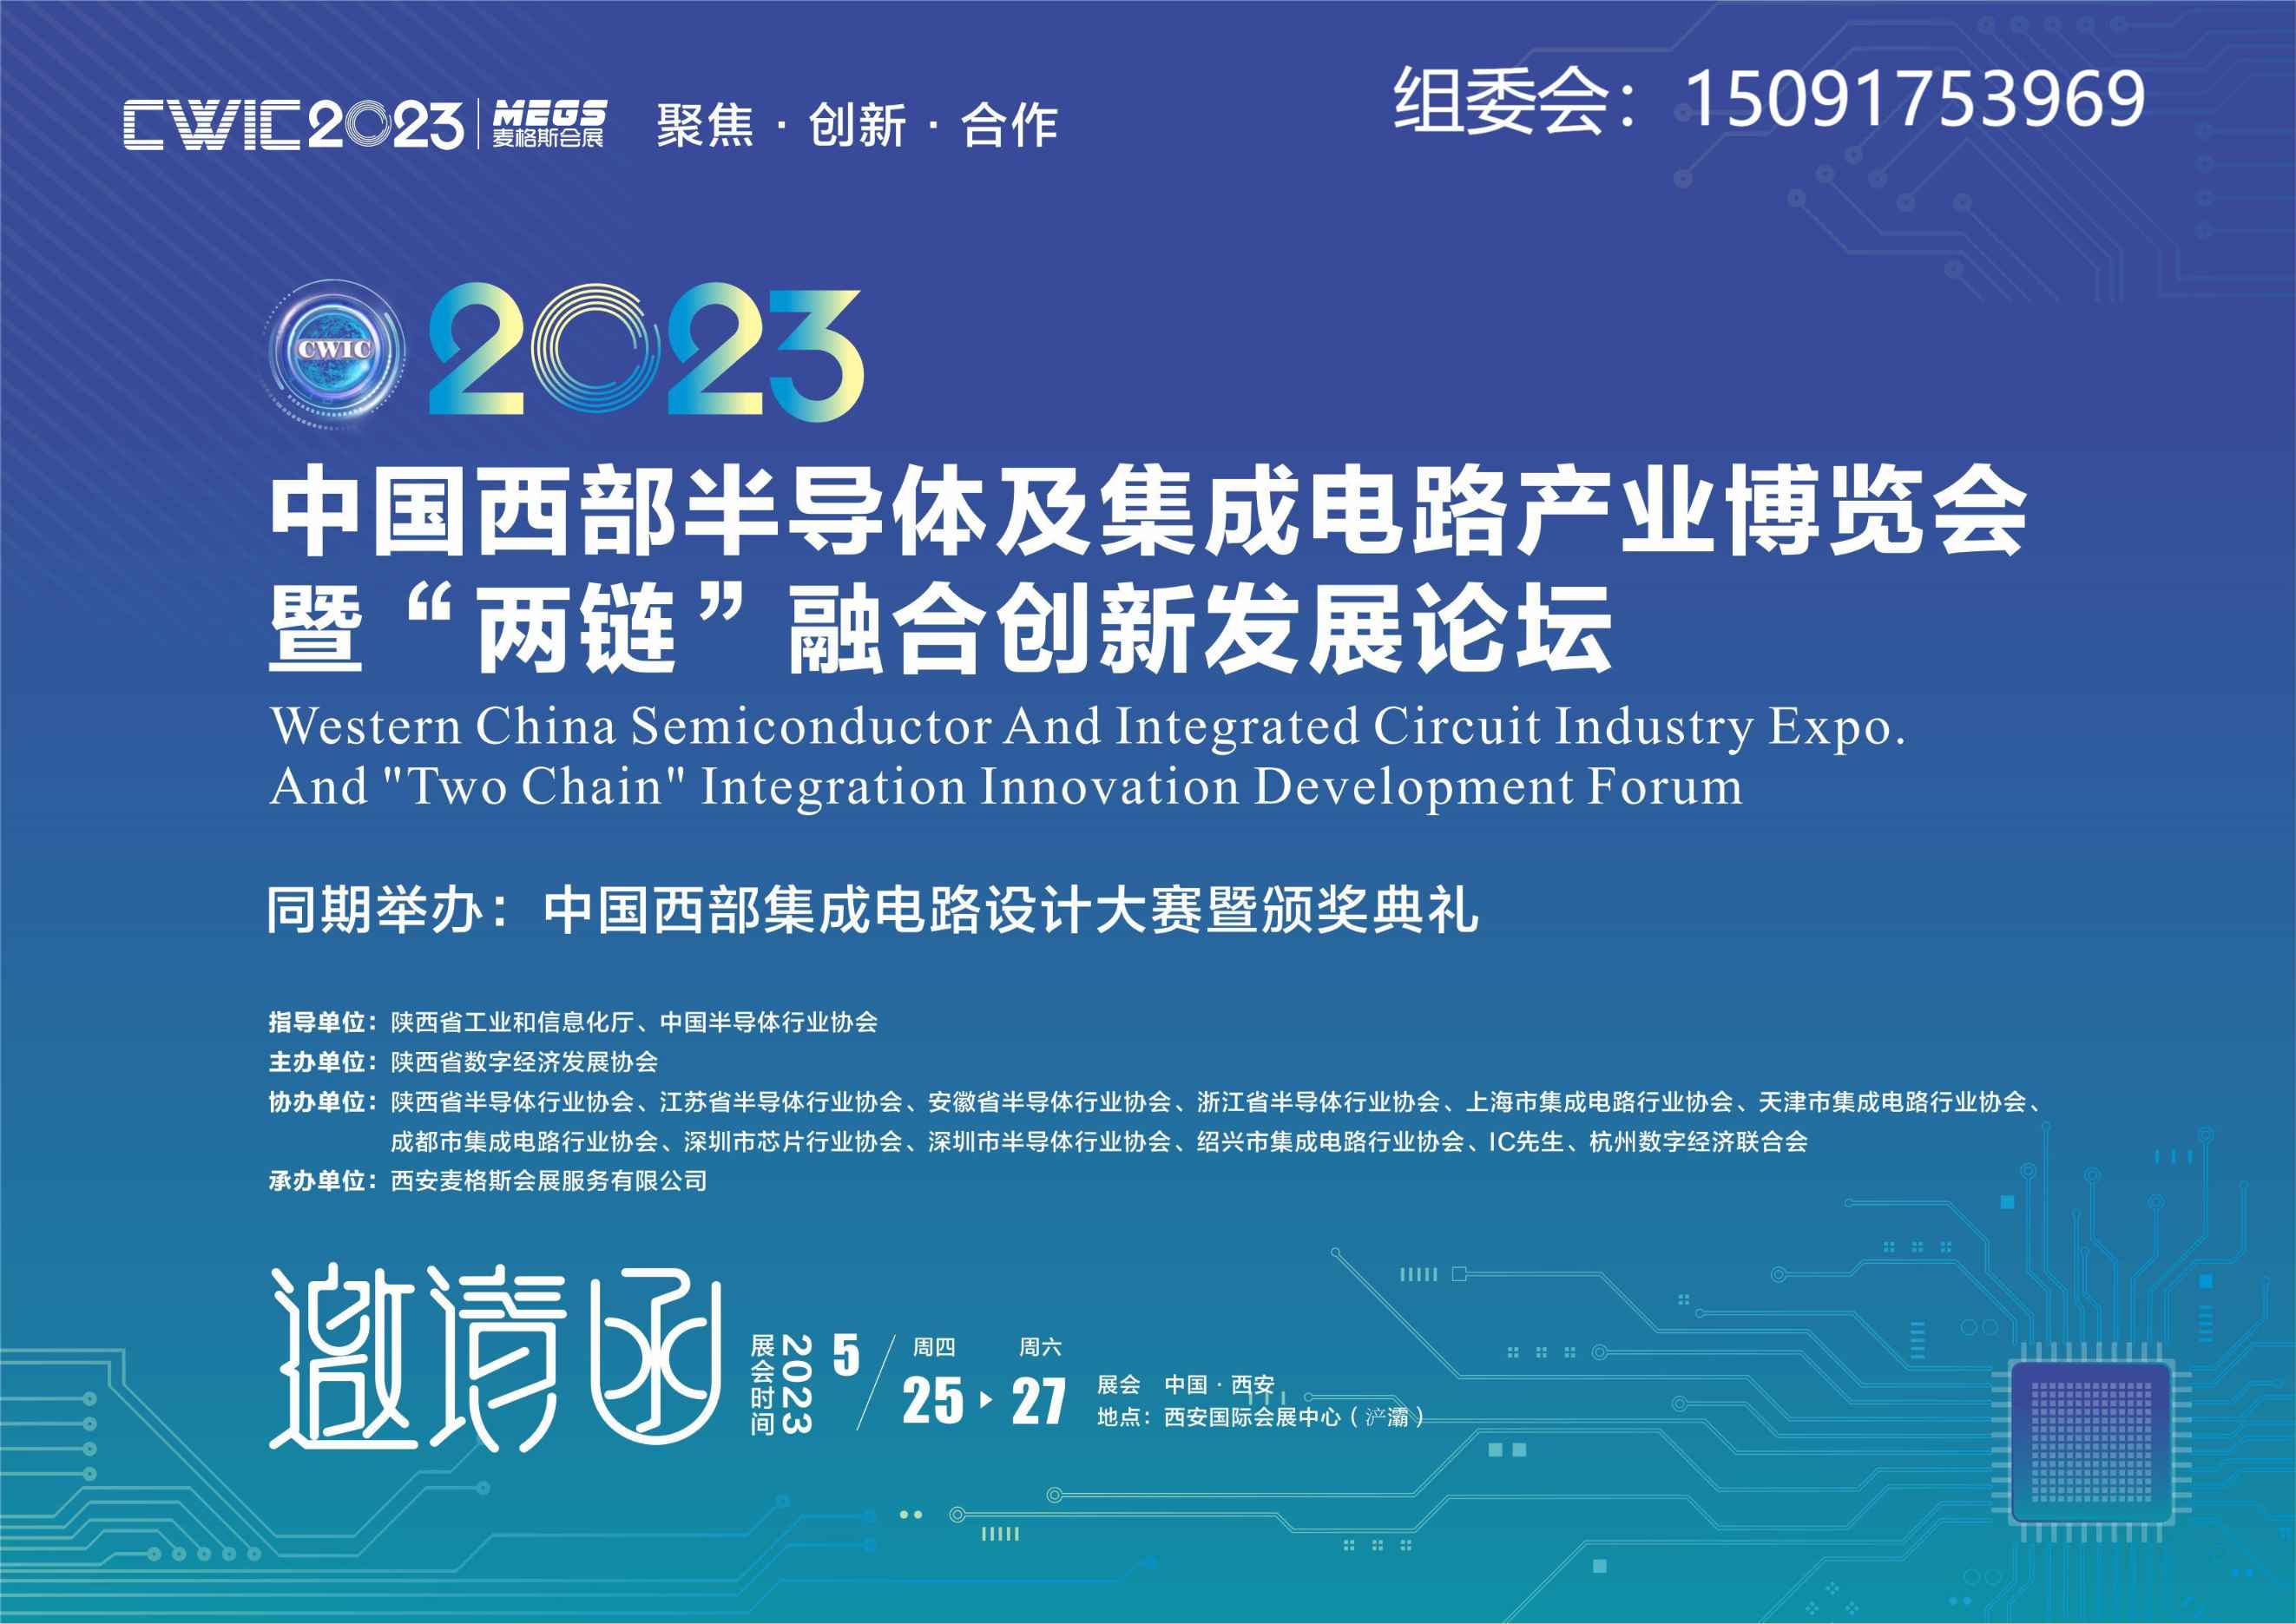 首届中国西部半导体及集成电路产业博览会暨“两链”融合发展论坛（CWIC2023）将于5月下旬在西安举办